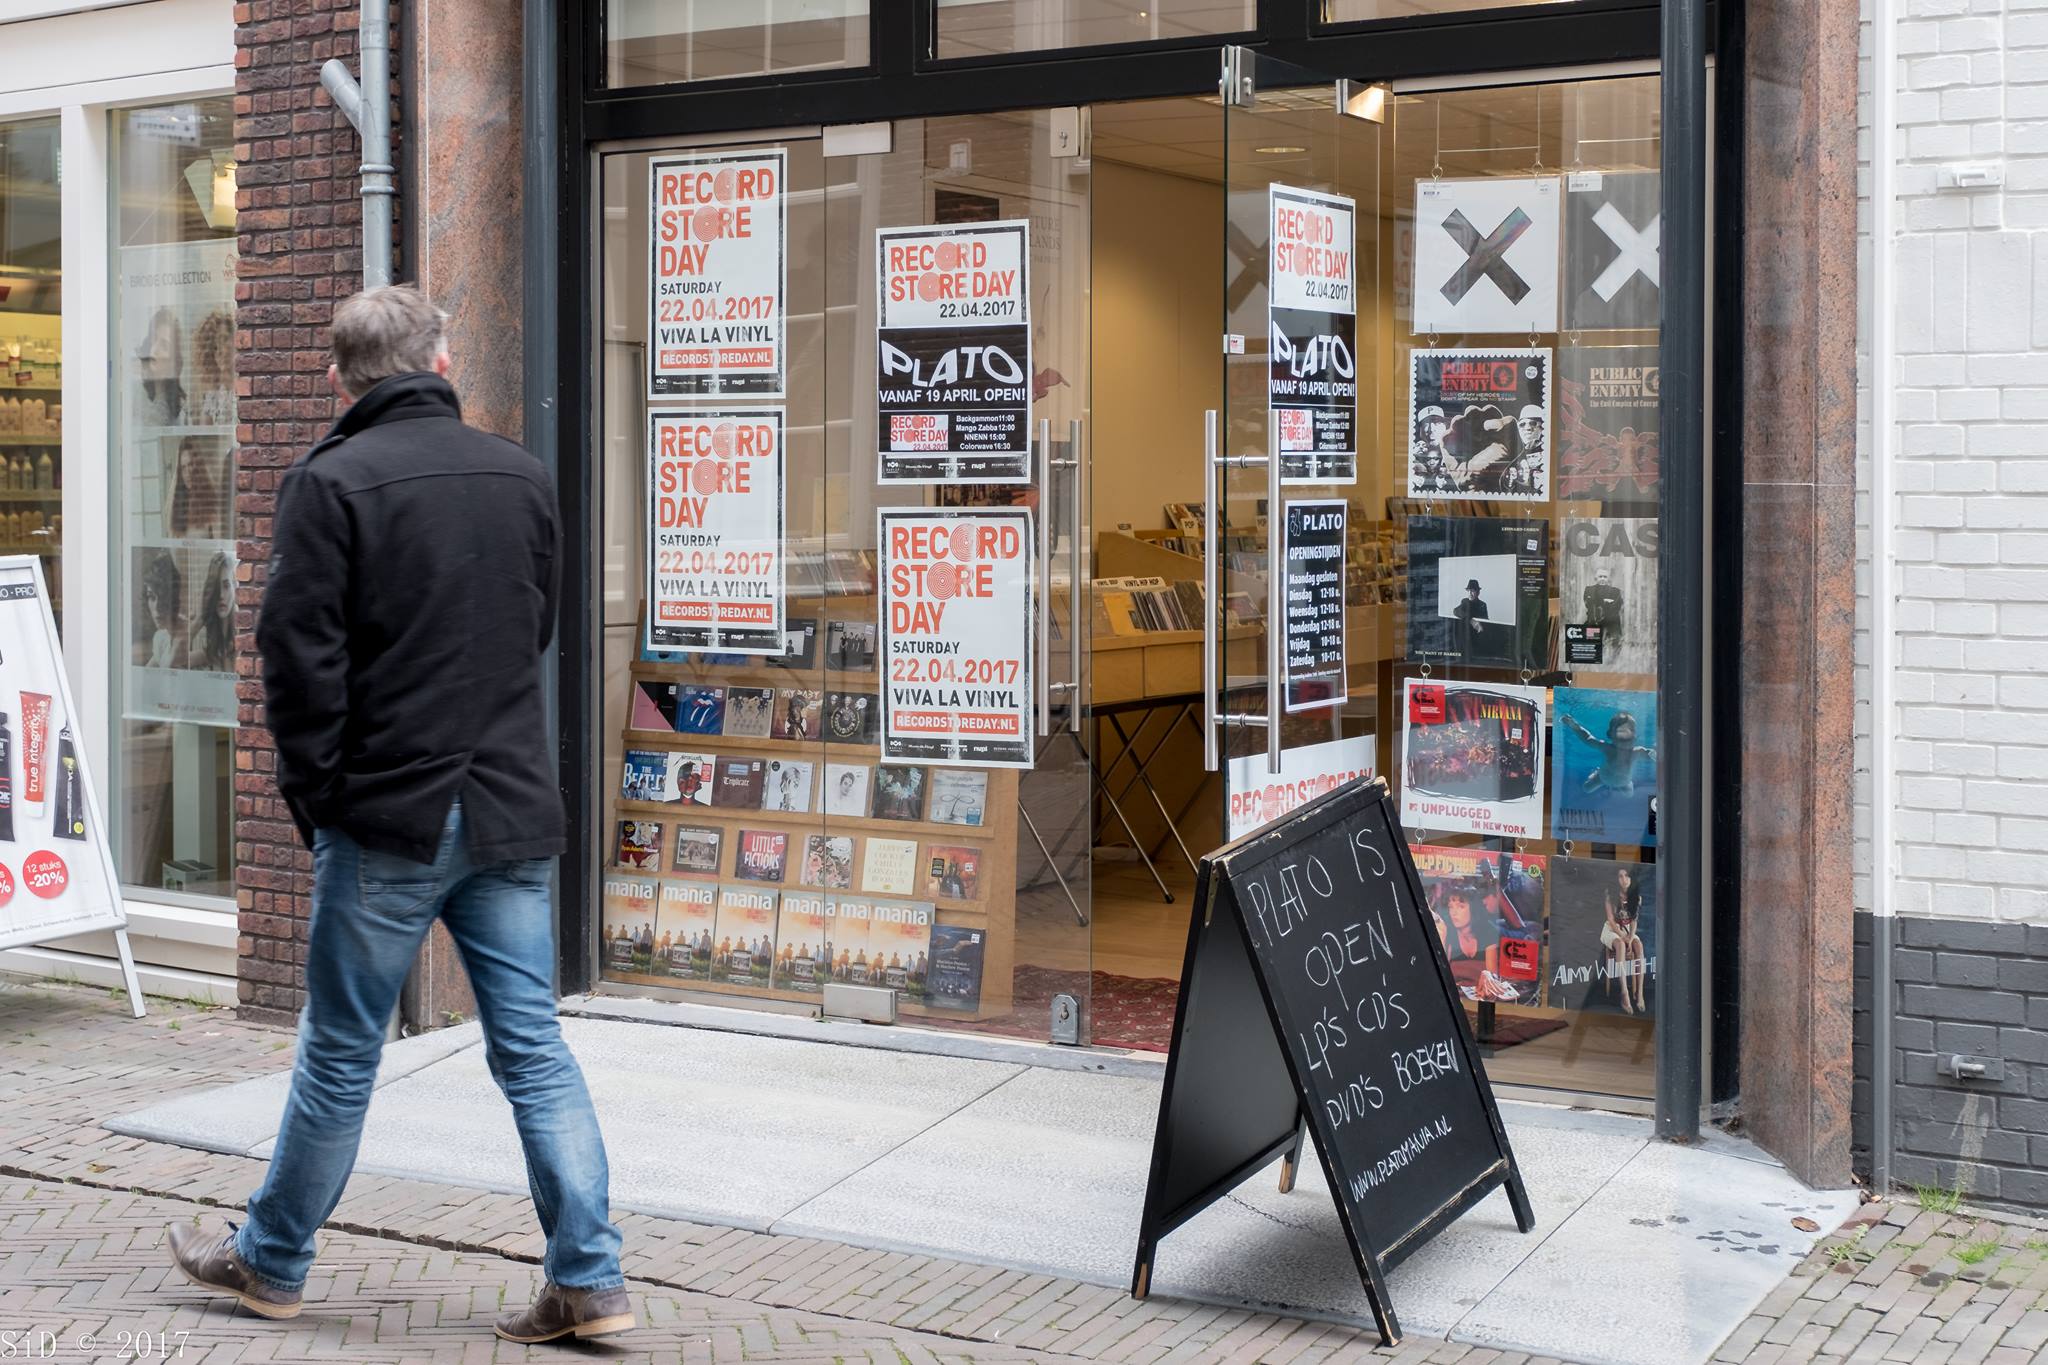 Plato en meer winkels in Deventer vind je bij Shoppen in Deventer